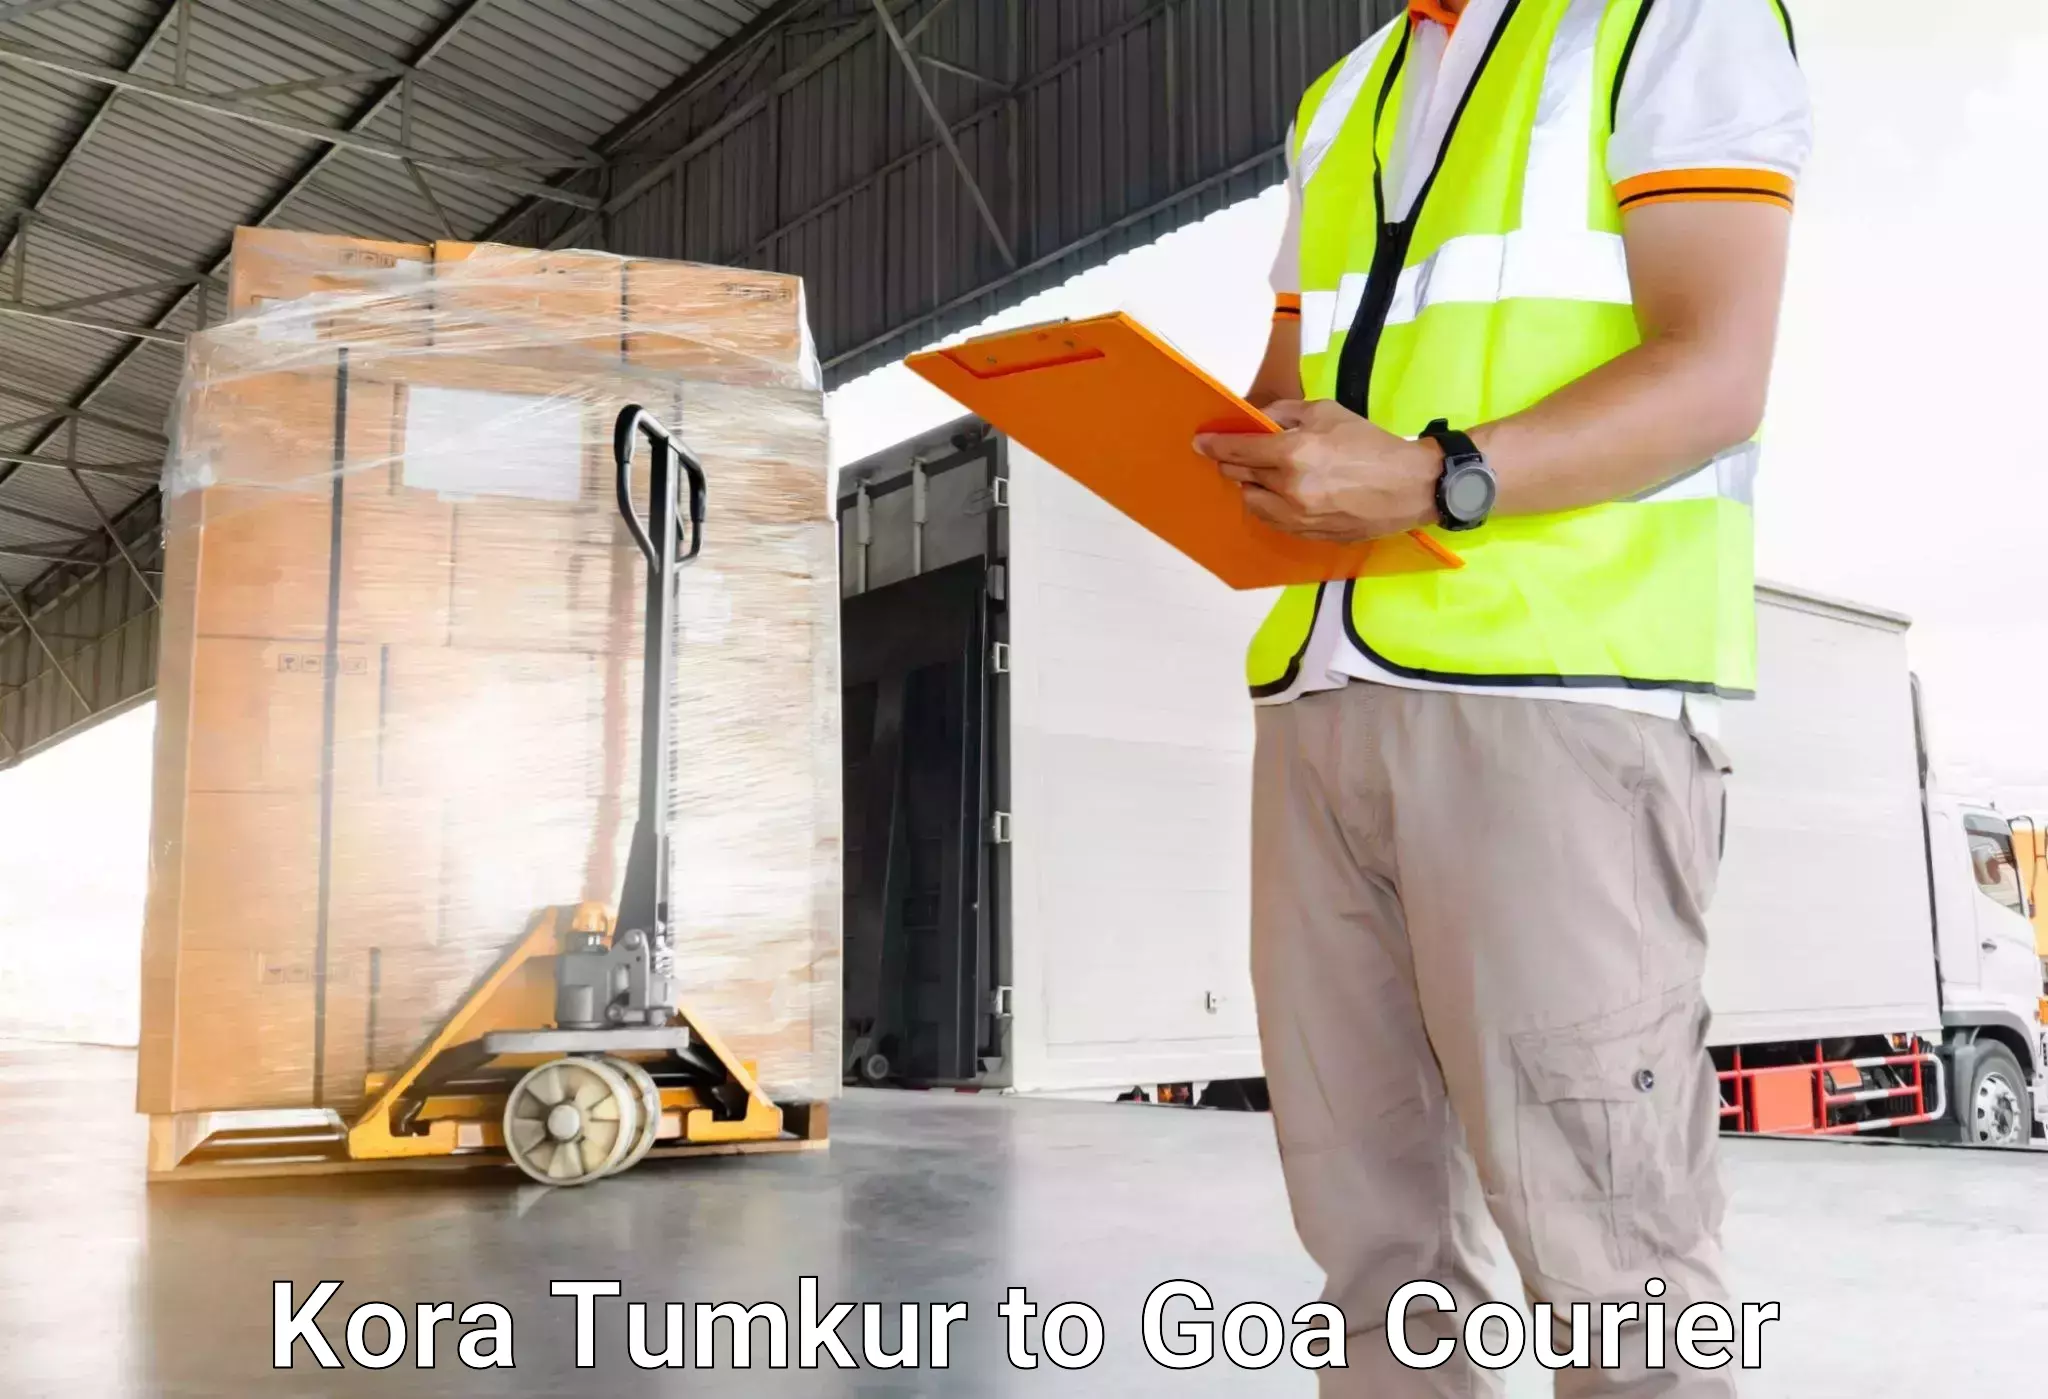 Holiday season luggage delivery Kora Tumkur to Goa